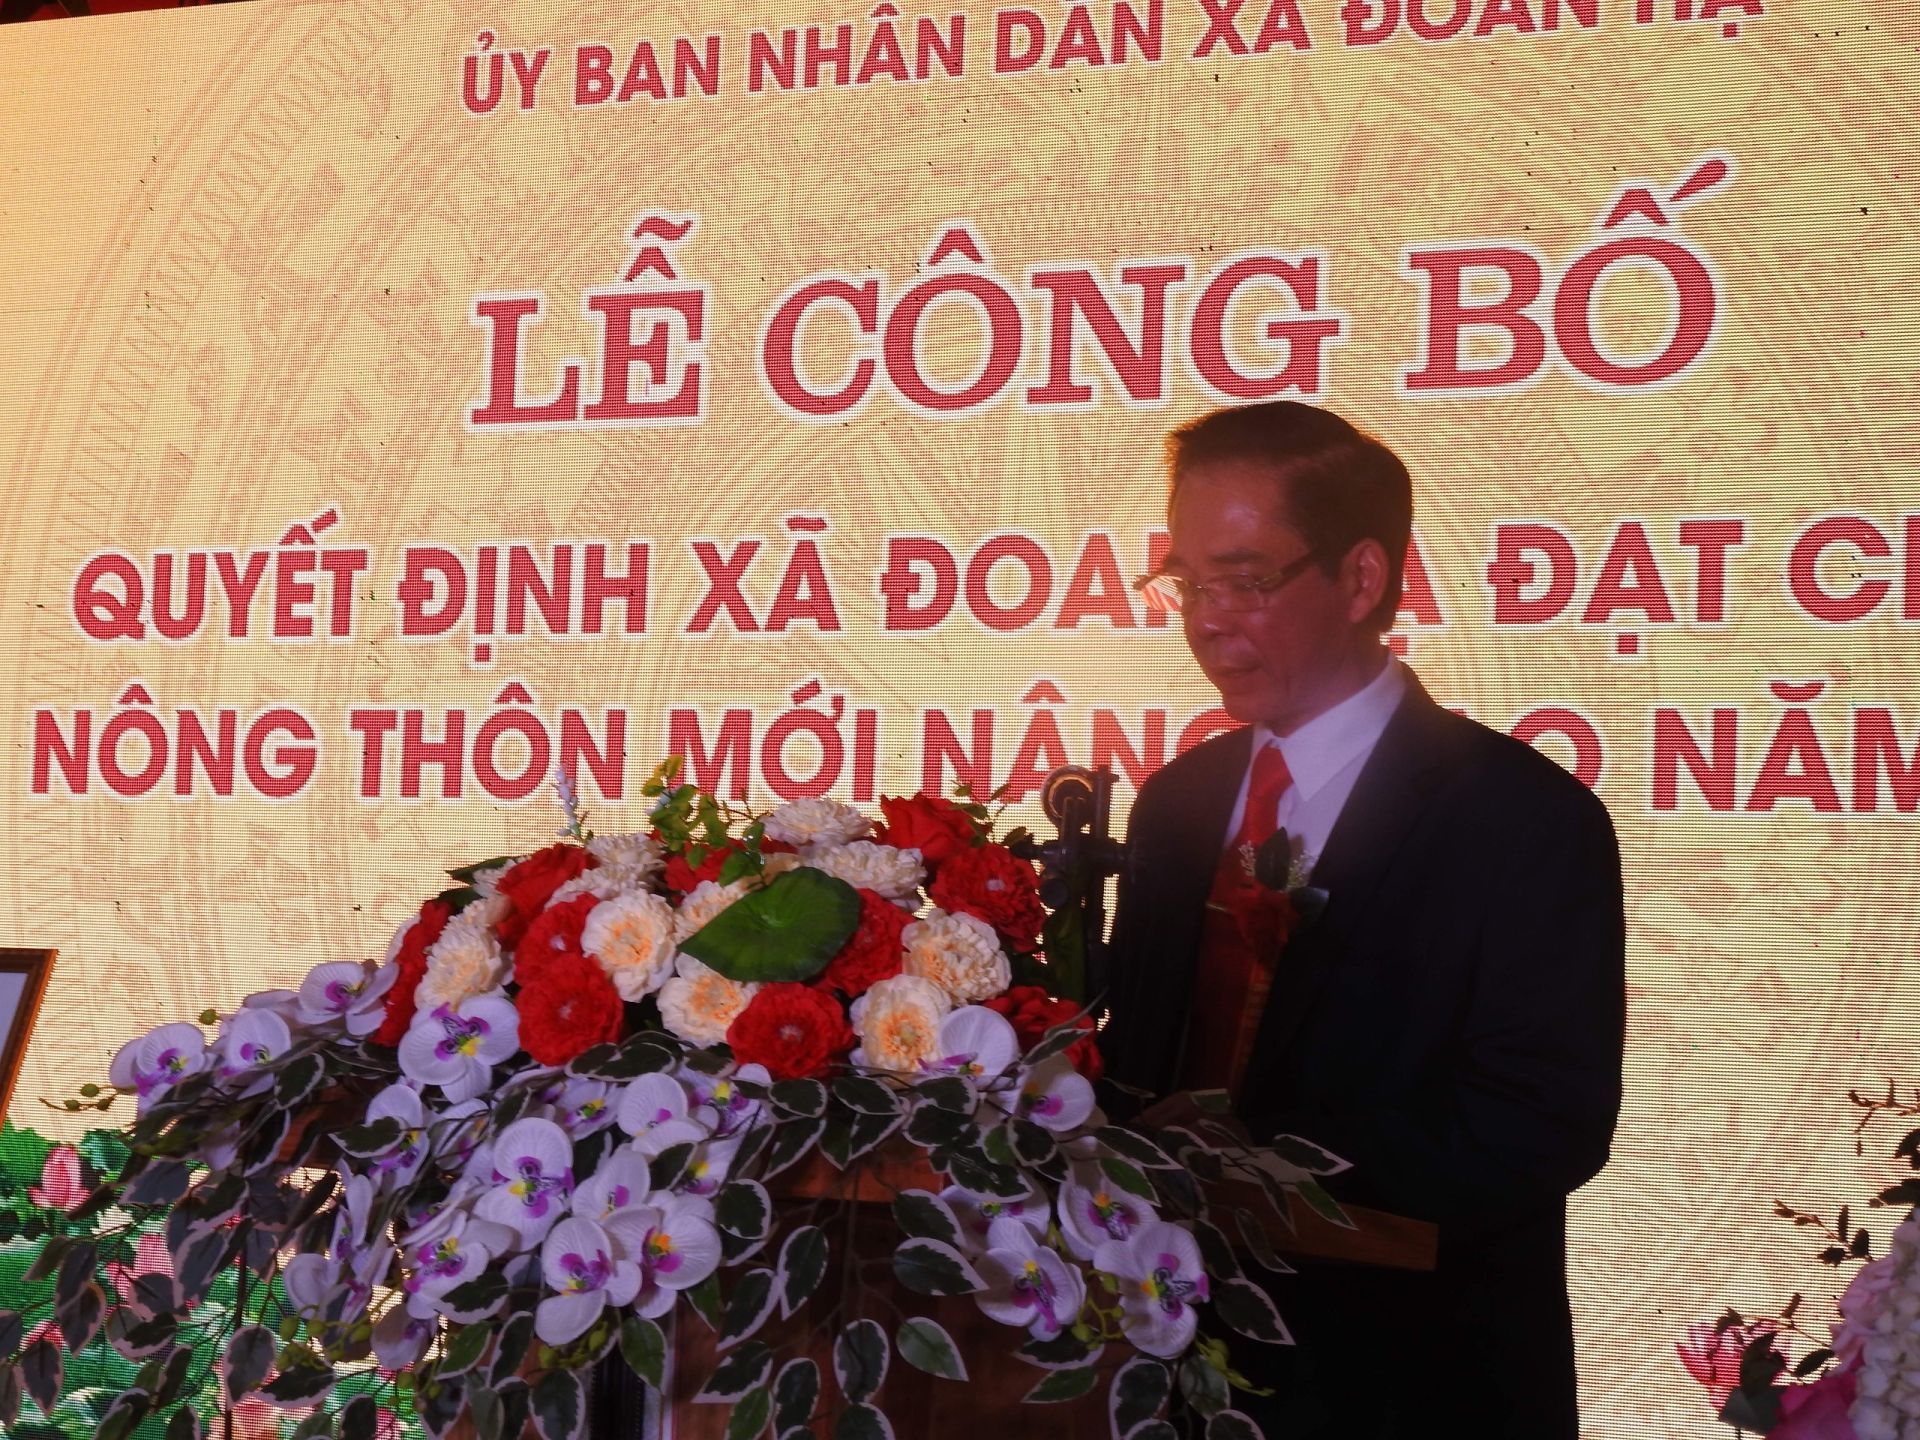 Ông Phạm Xuân Thư - Chủ tịch UBND xã Đoan Hạ phát biểu tại buổi Lễ Công bố Quyết định xã Đoan Hạ đạt chuẩn Nông thôn mới nâng cao năm 2023